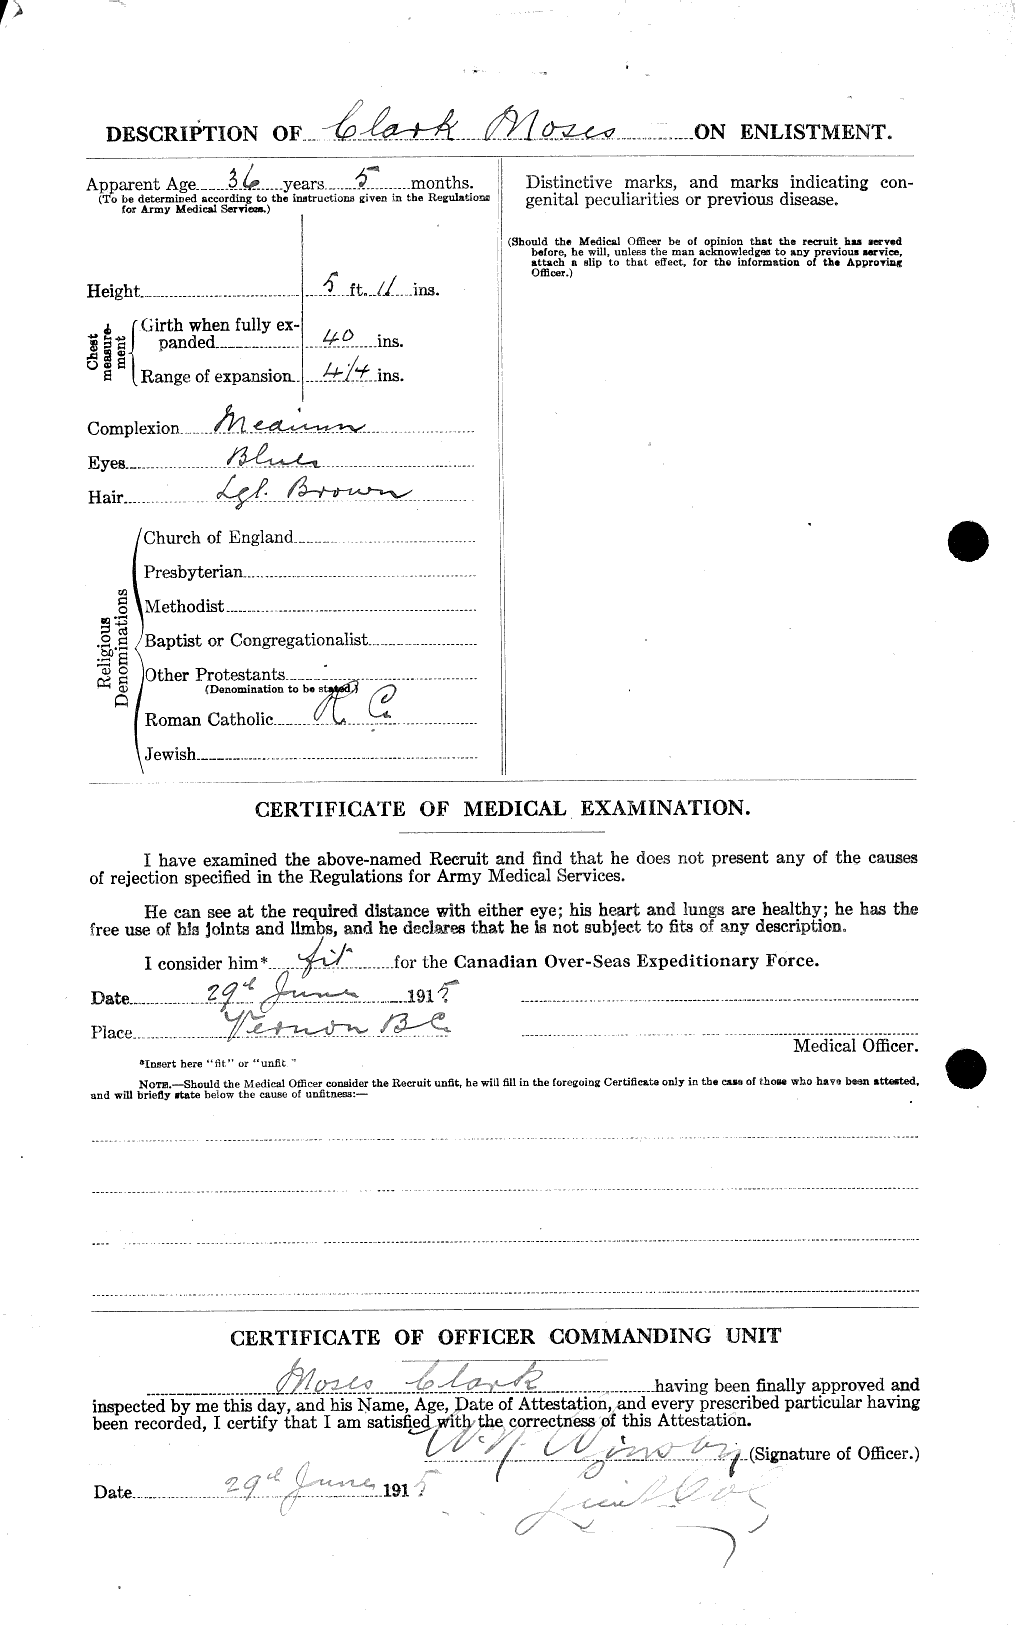 Dossiers du Personnel de la Première Guerre mondiale - CEC 023453b